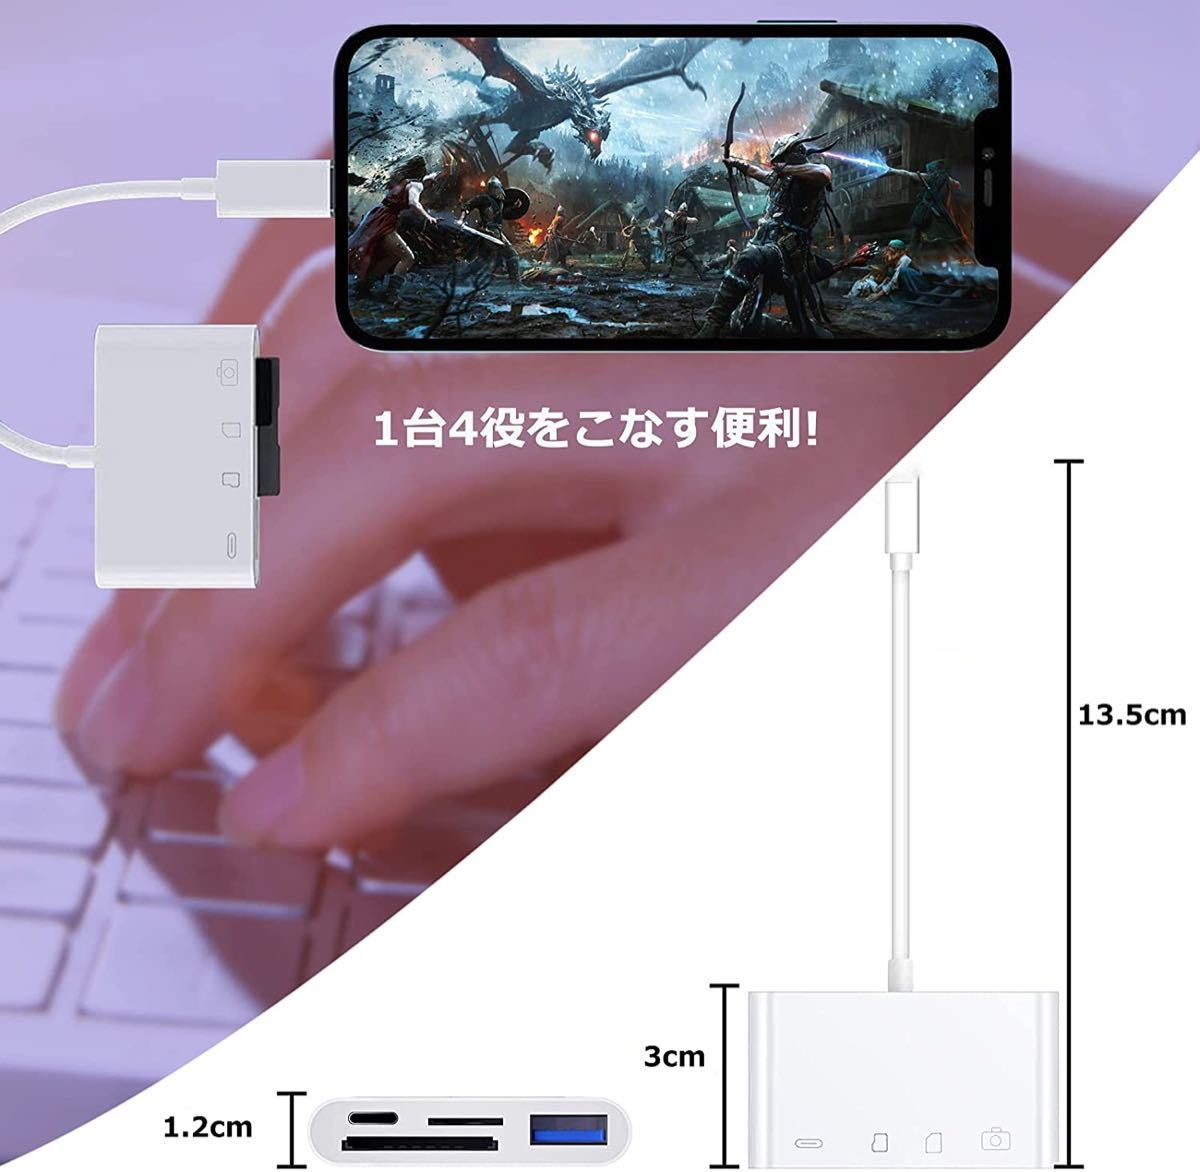 新品 4in1 SDカードリーダー USB カメラアダプタ SD/MicroSD Lightning iPhone